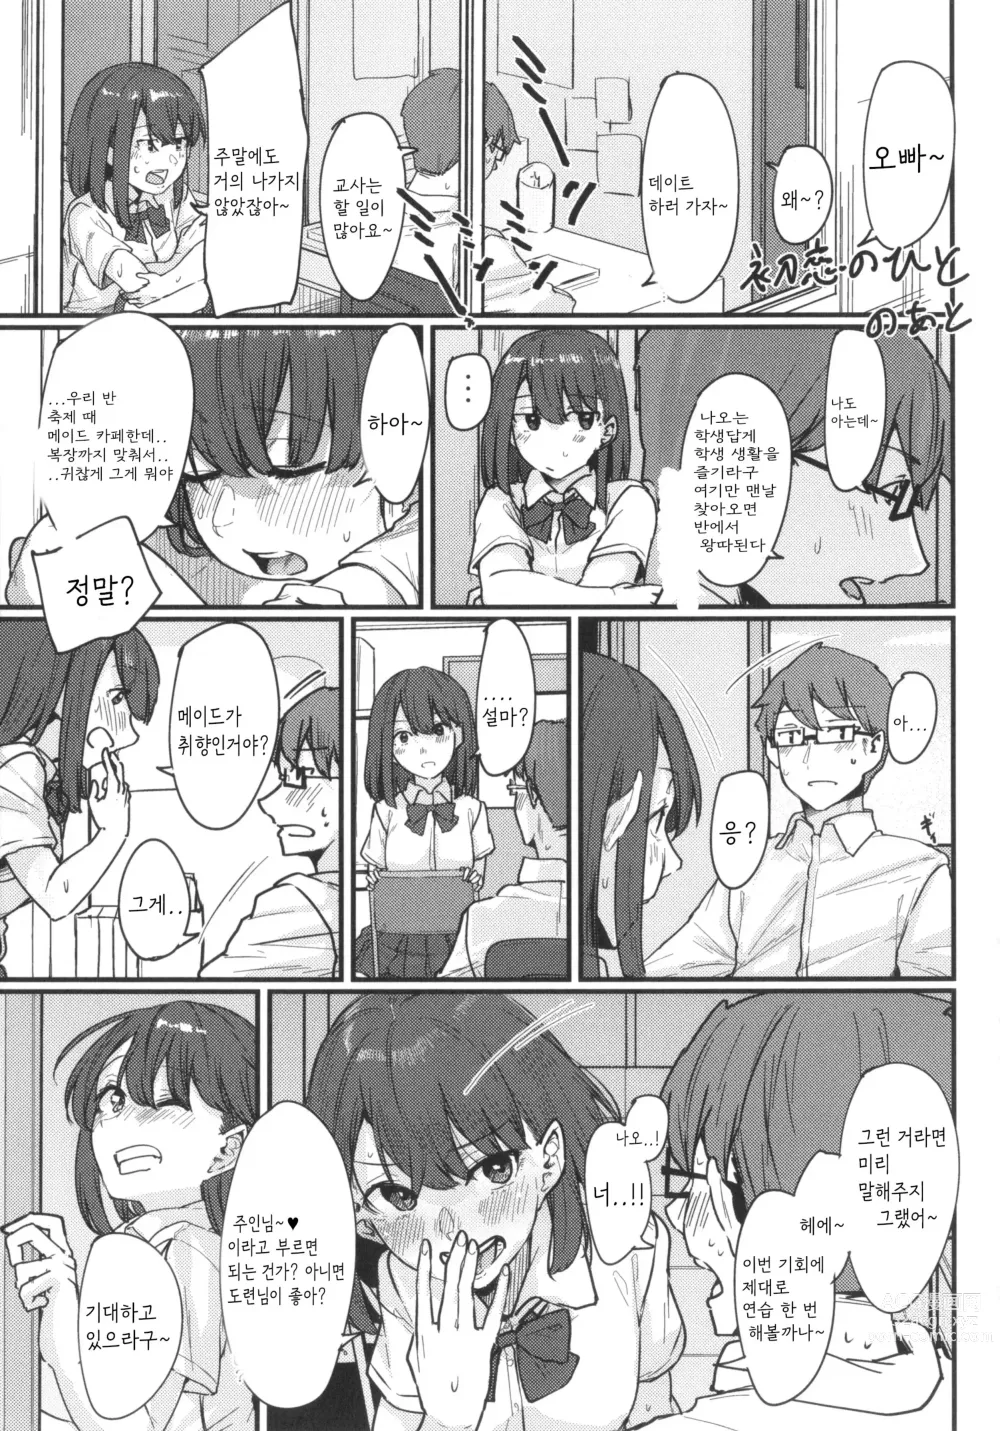 Page 73 of manga Hatsukoi no Hito